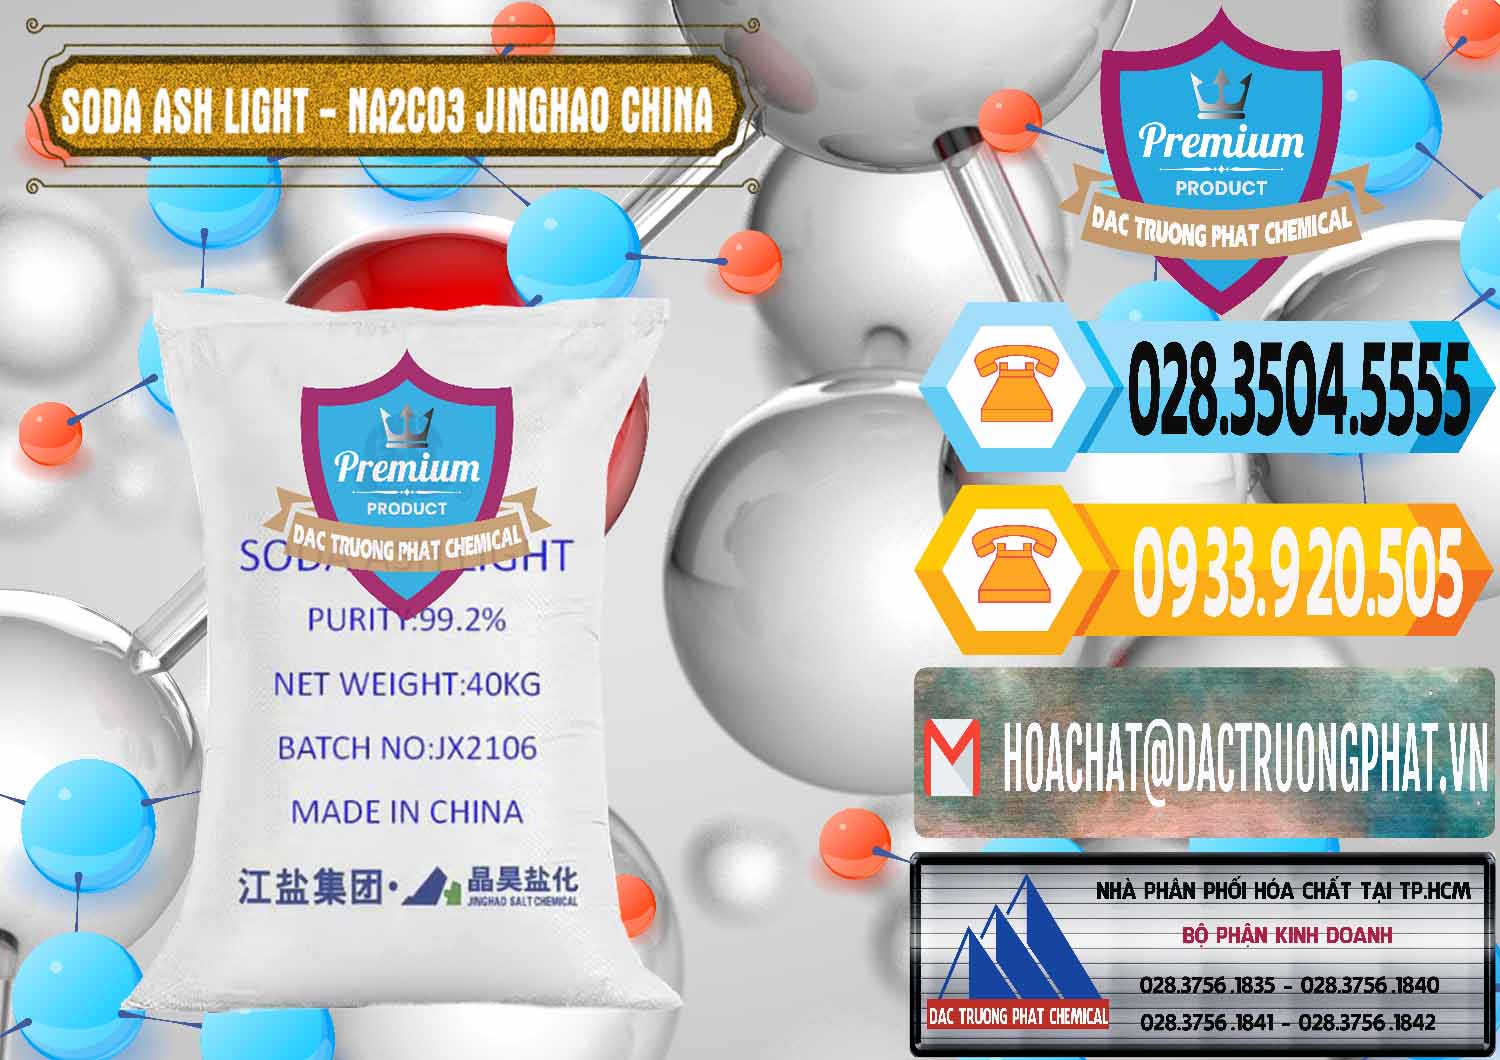 Nơi chuyên bán và phân phối Soda Ash Light - NA2CO3 Jinghao Trung Quốc China - 0339 - Cty phân phối - cung ứng hóa chất tại TP.HCM - hoachattayrua.net